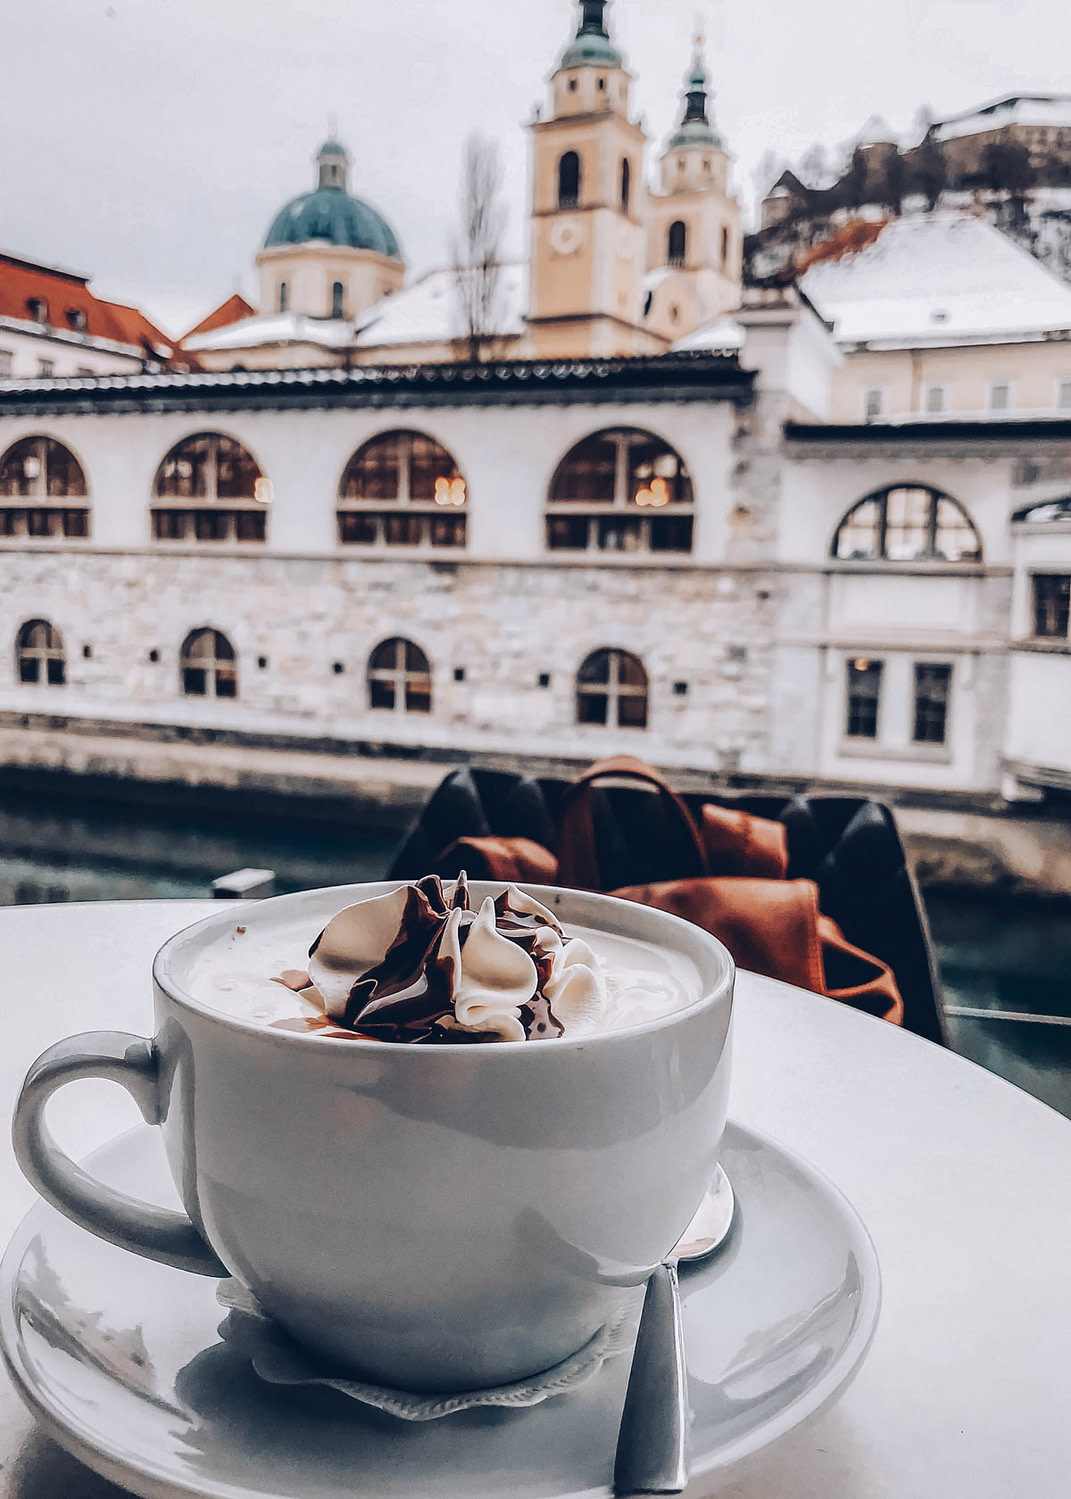 Hot chocolate in Ljubljana